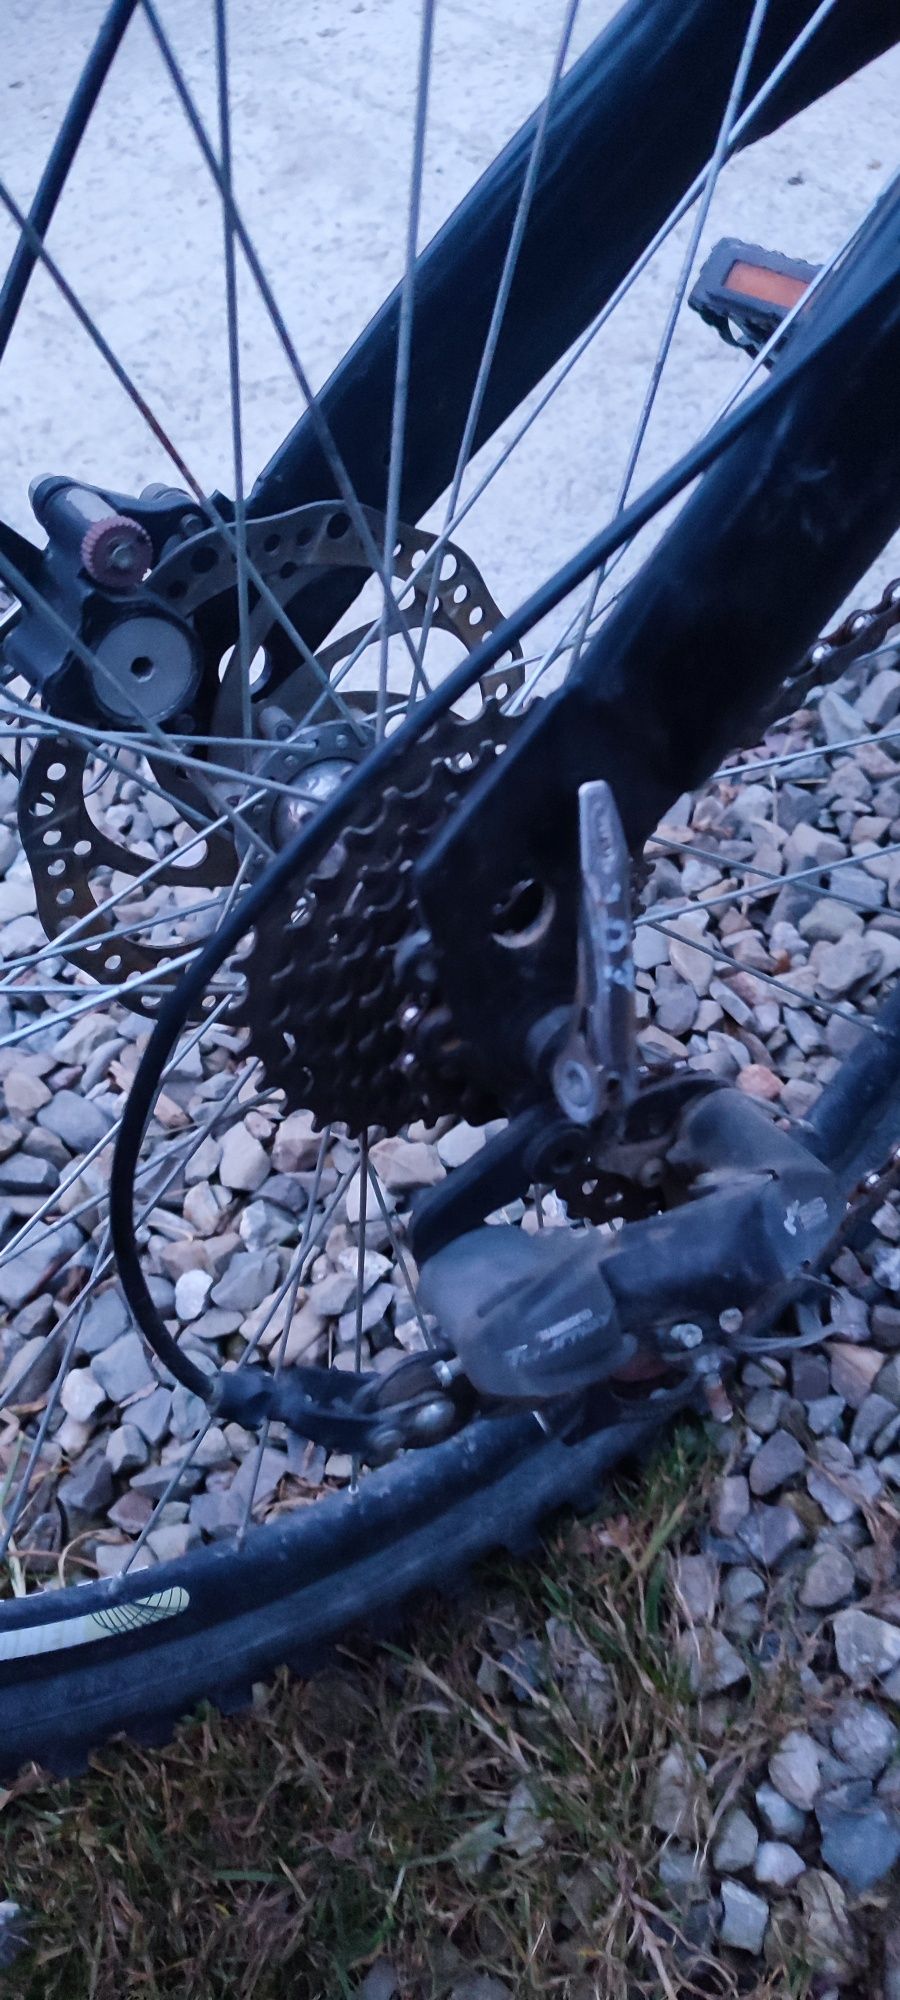 Bicicleta cu cadru de otel